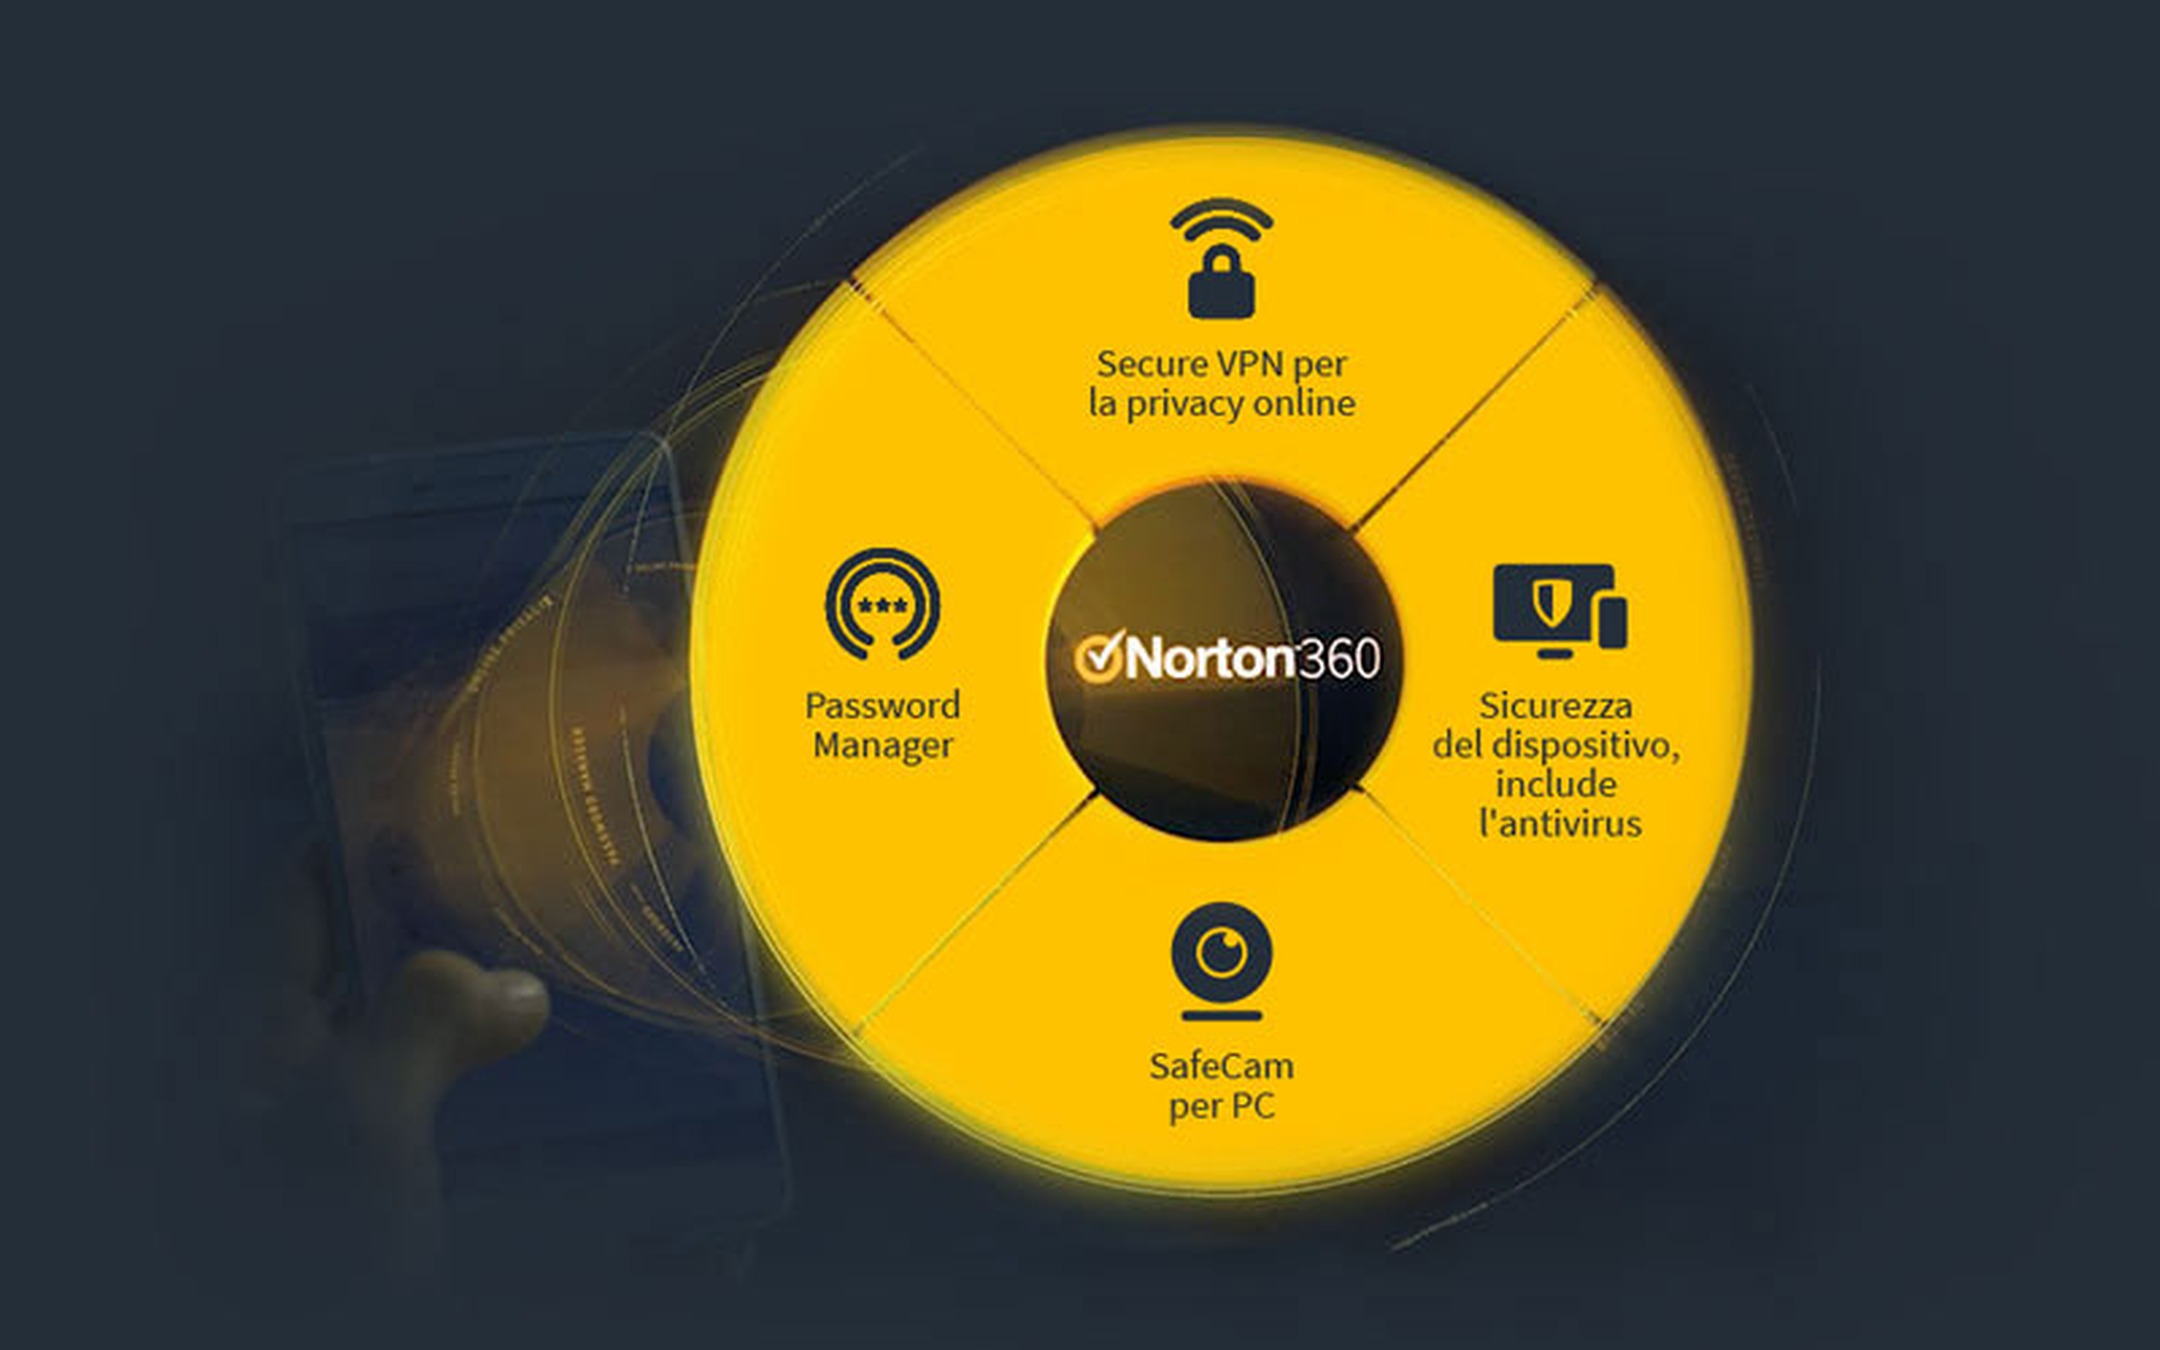 Norton 360, sicurezza totale a prezzi scontati